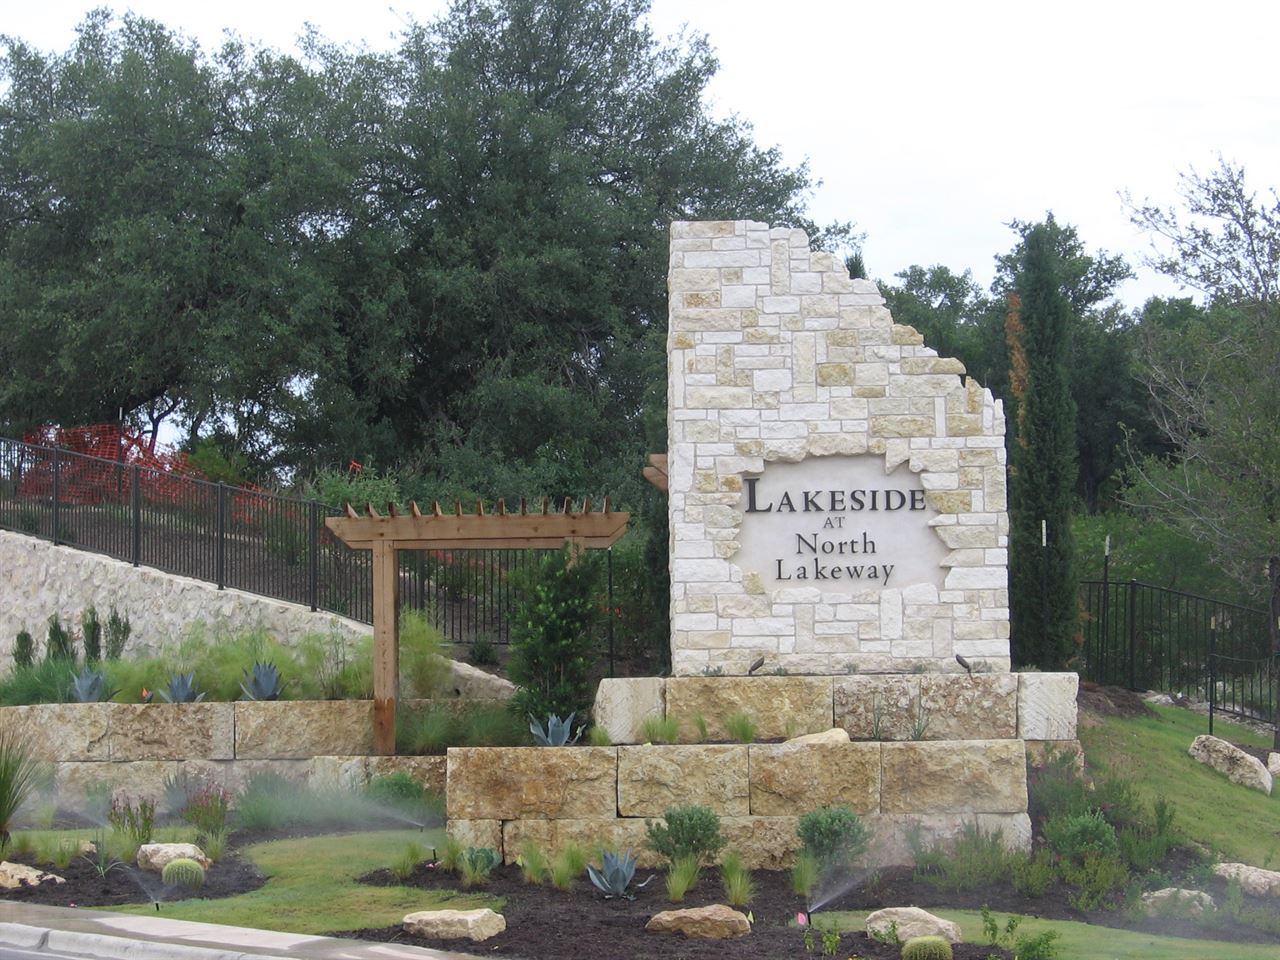 Lakeside at North Lakeway